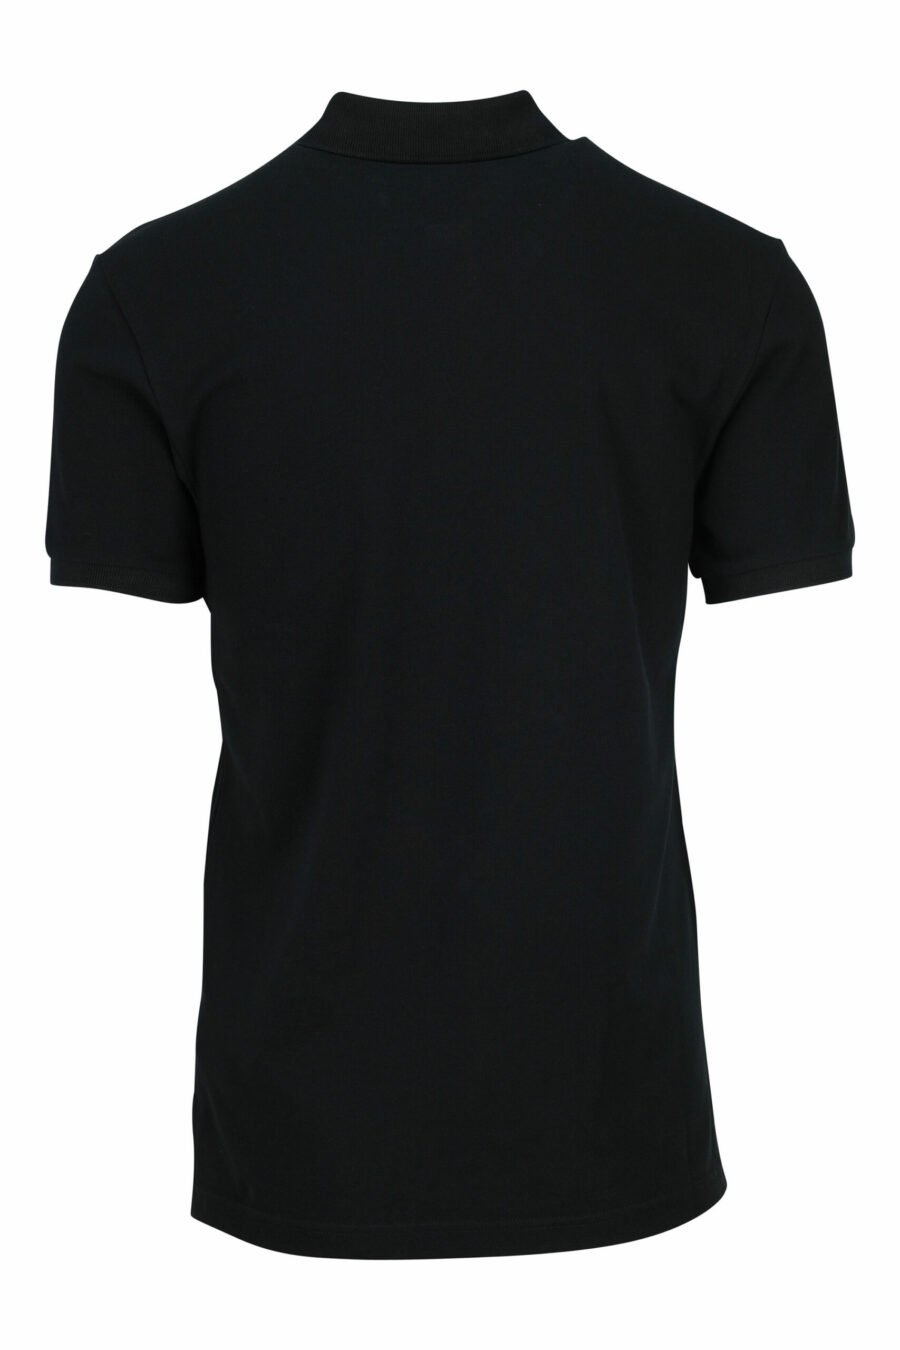 Schwarzes Poloshirt mit einfarbigem, quadratischem Logo - 667113765976 1 skaliert